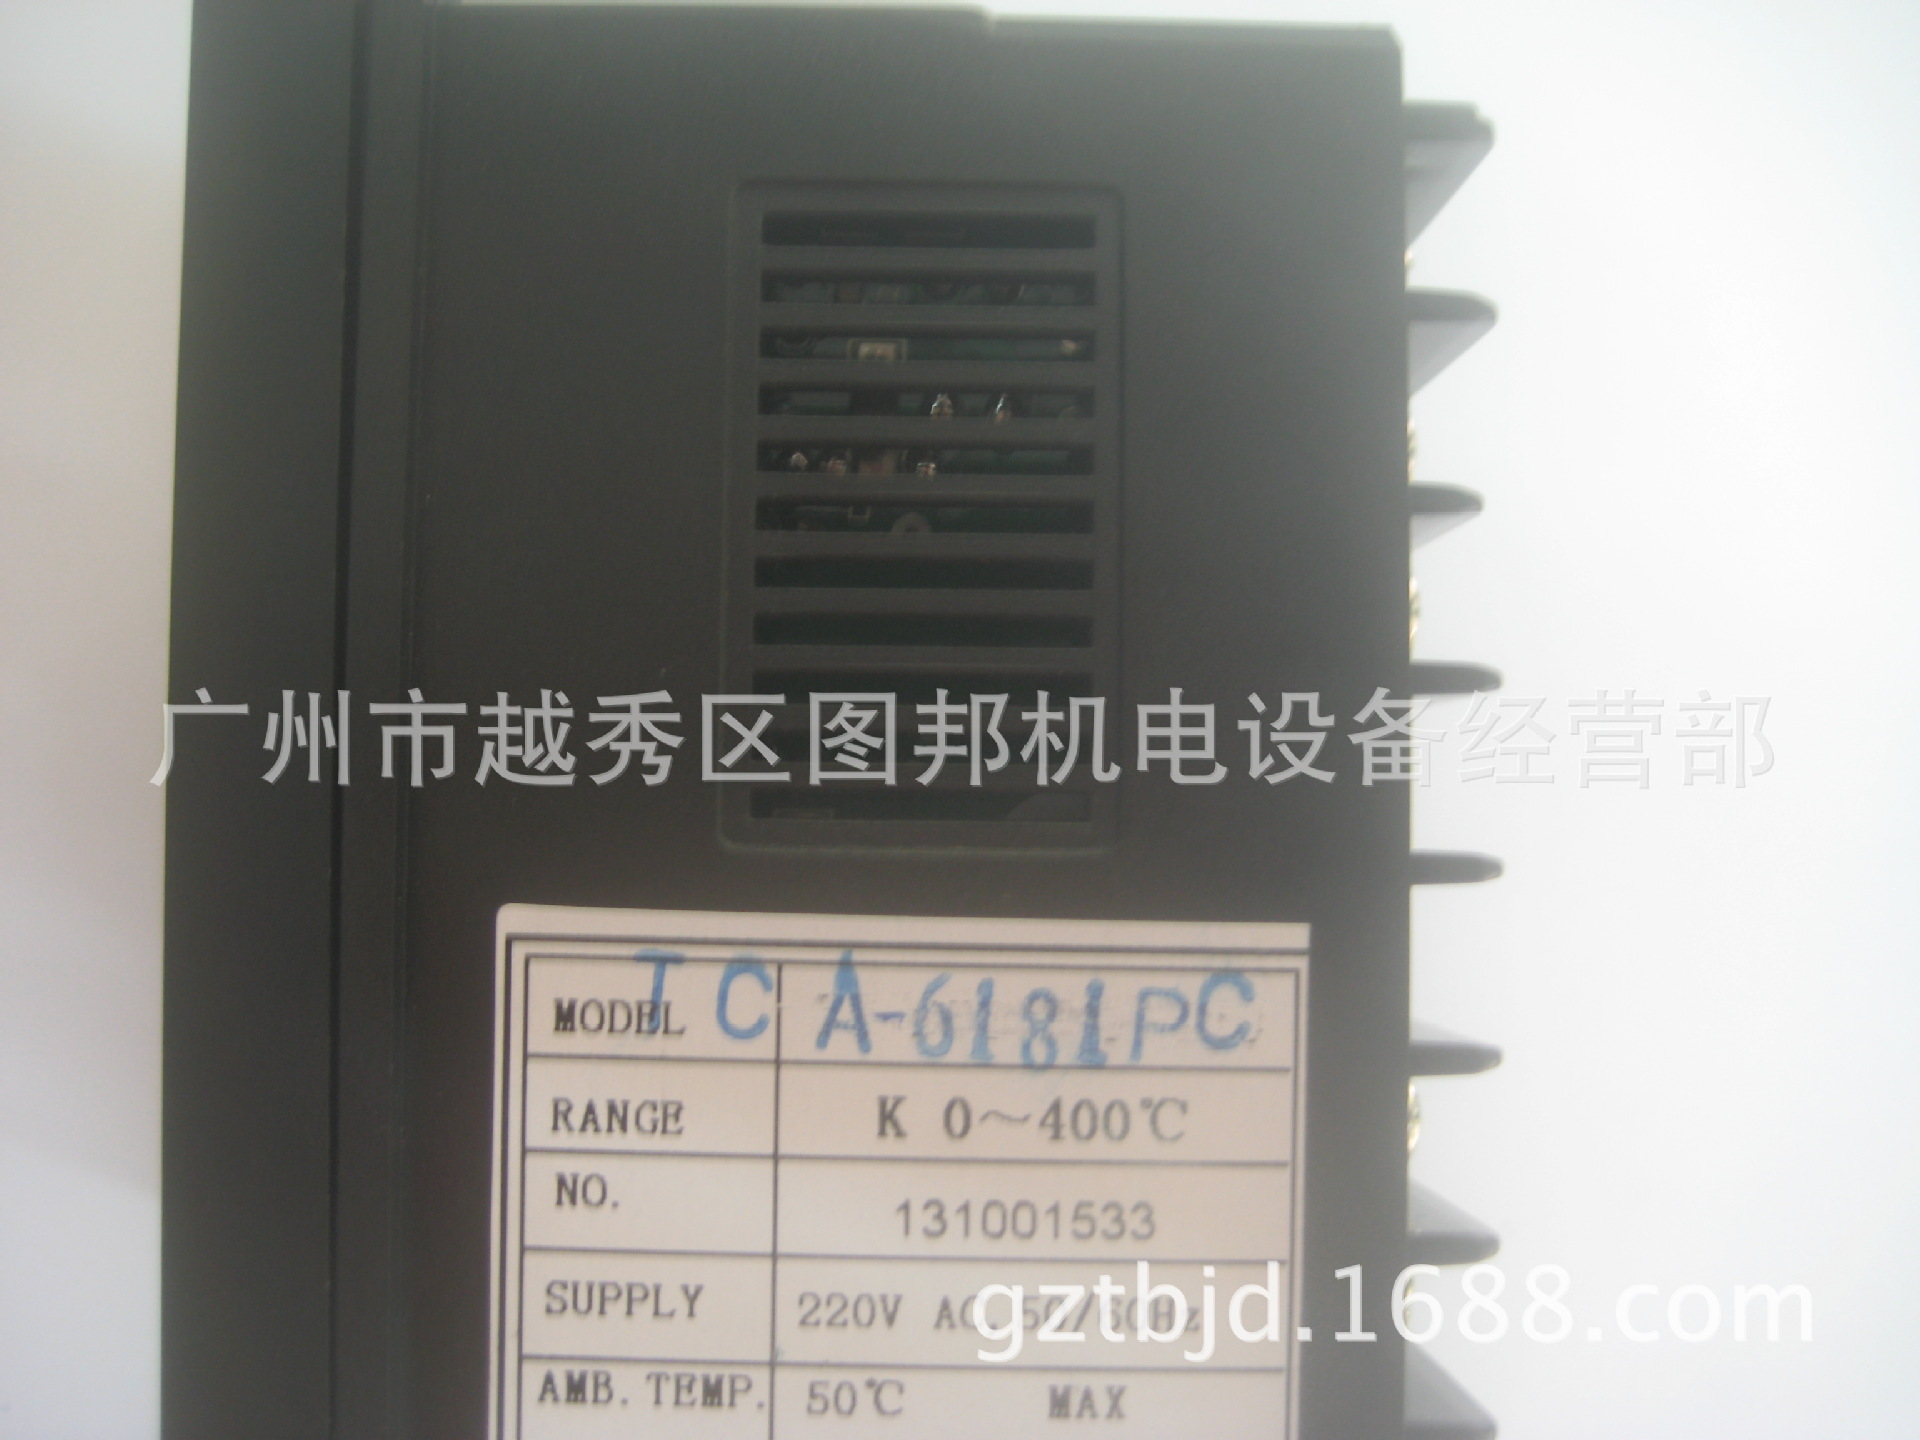 大型印刷機專用溫控TCA-6181PC 400度 (1)